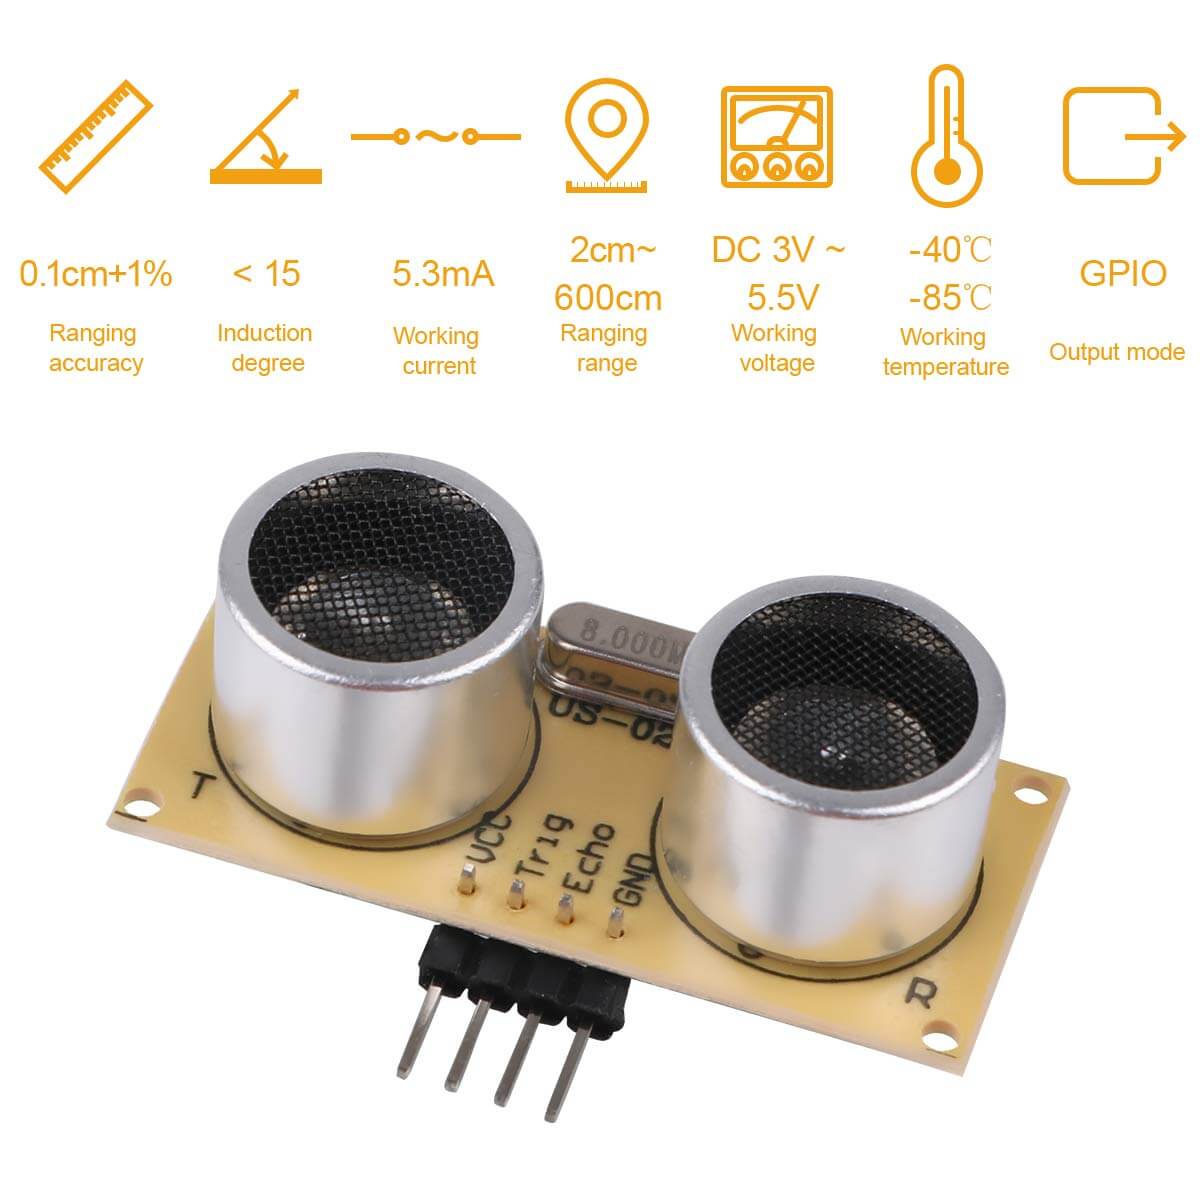 Arduino Nano Kit for AMS 5915 Pressure Sensors